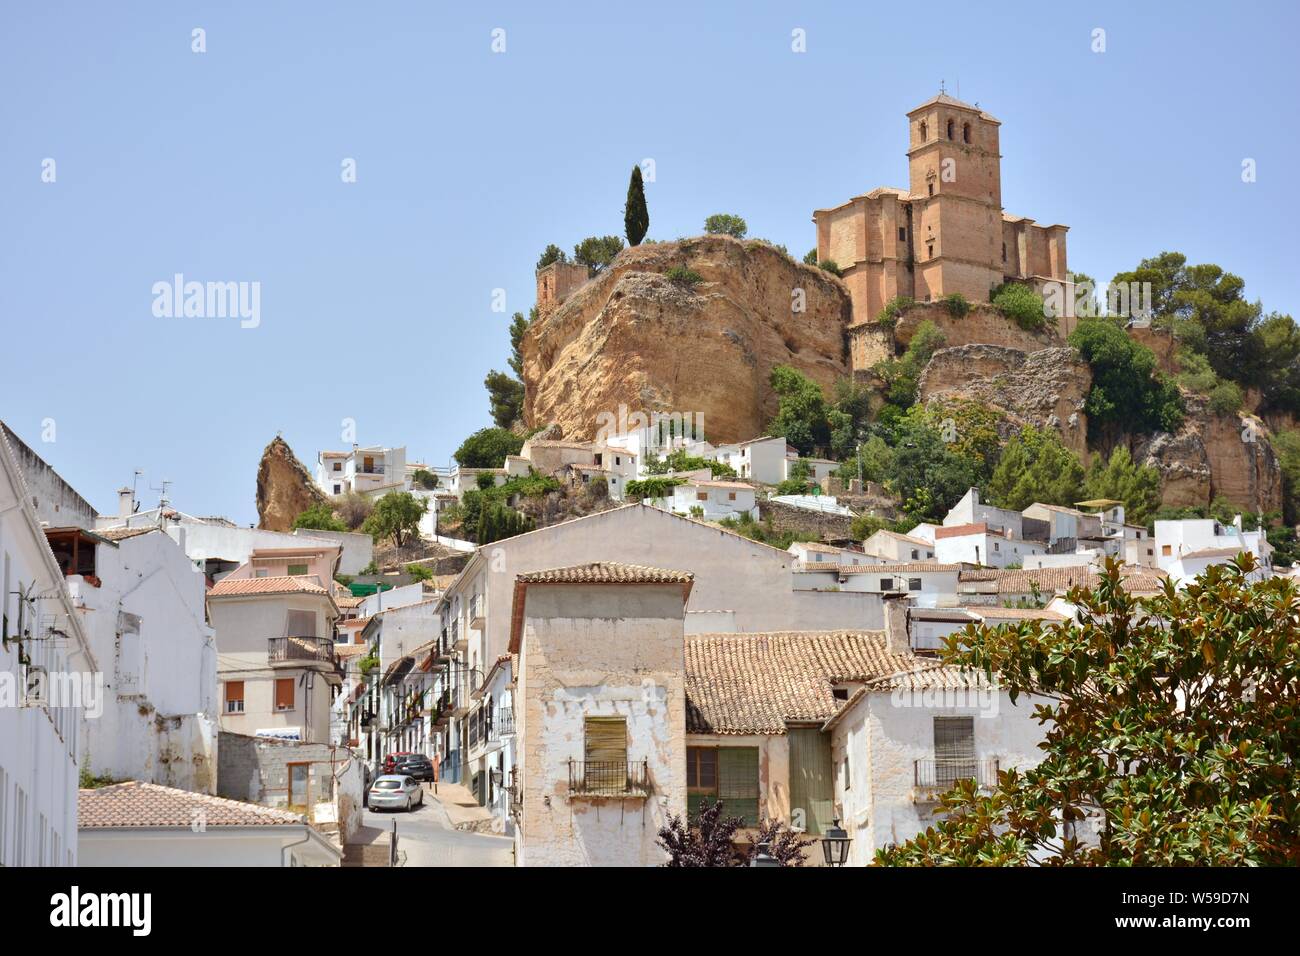 Vista del pueblo de Montefrío desde un mirador, Granada (España) Stock Photo